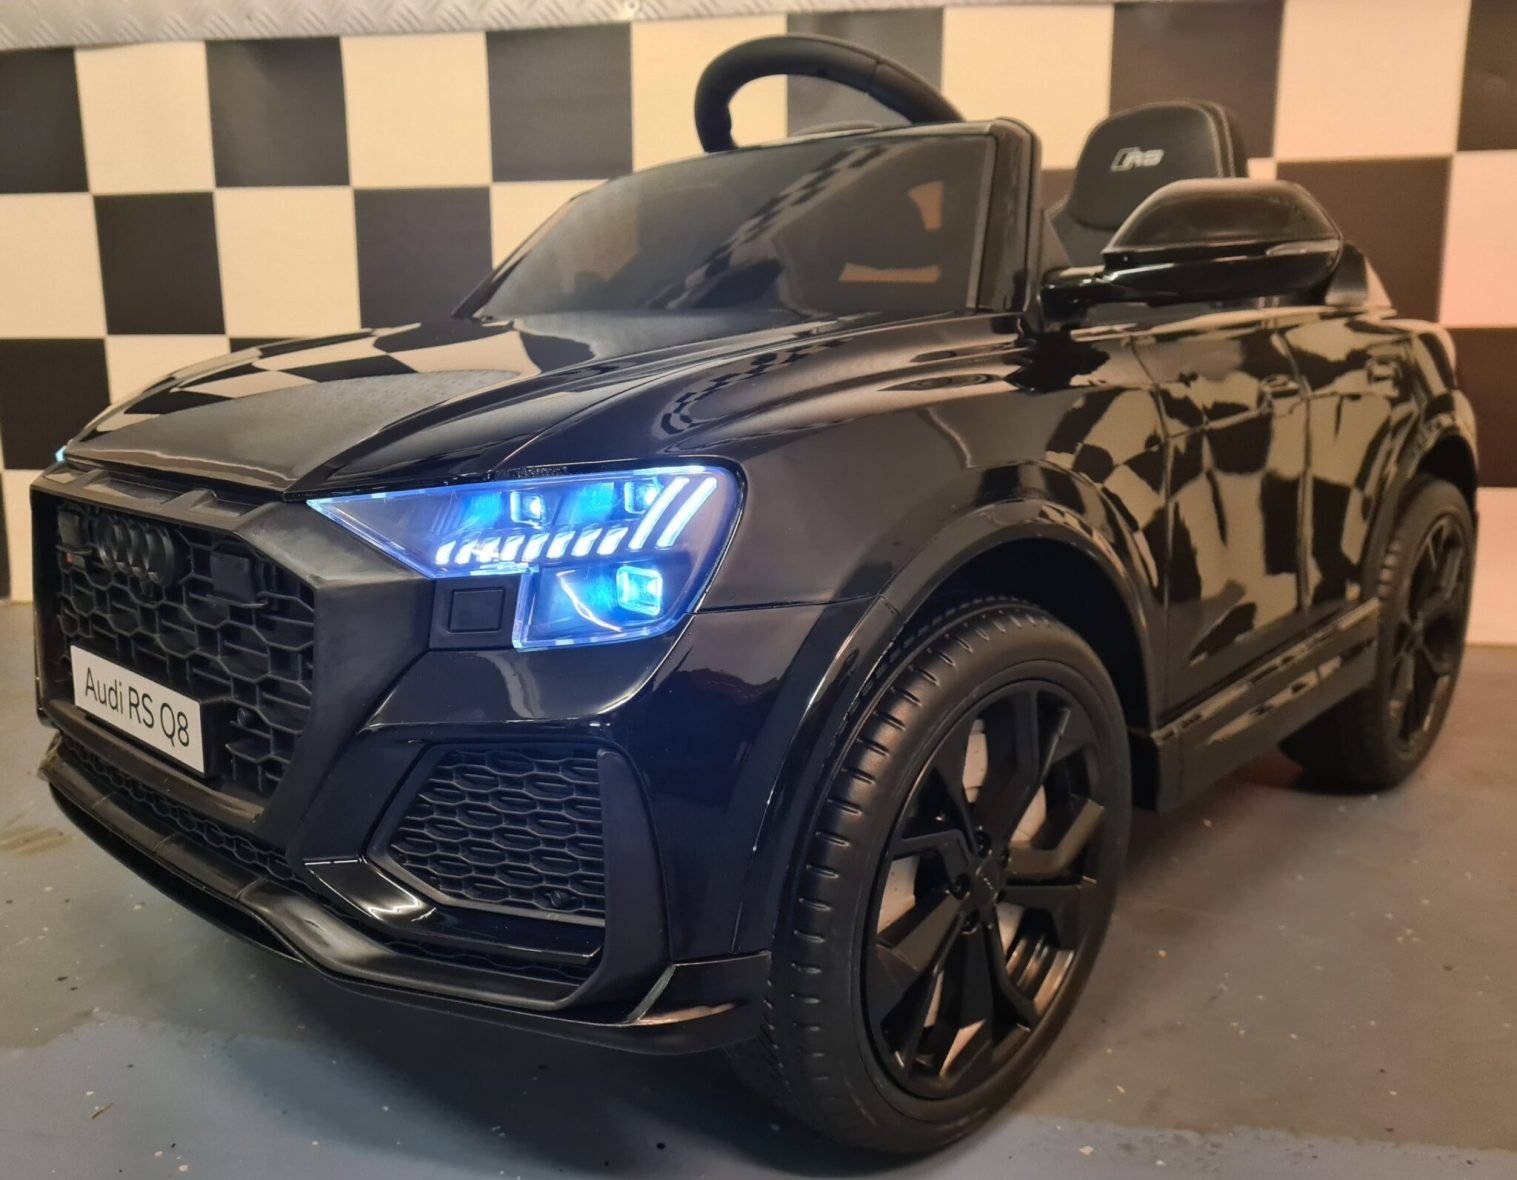 Elektrische-kinderauto-Audi-RS-Q8-zwart